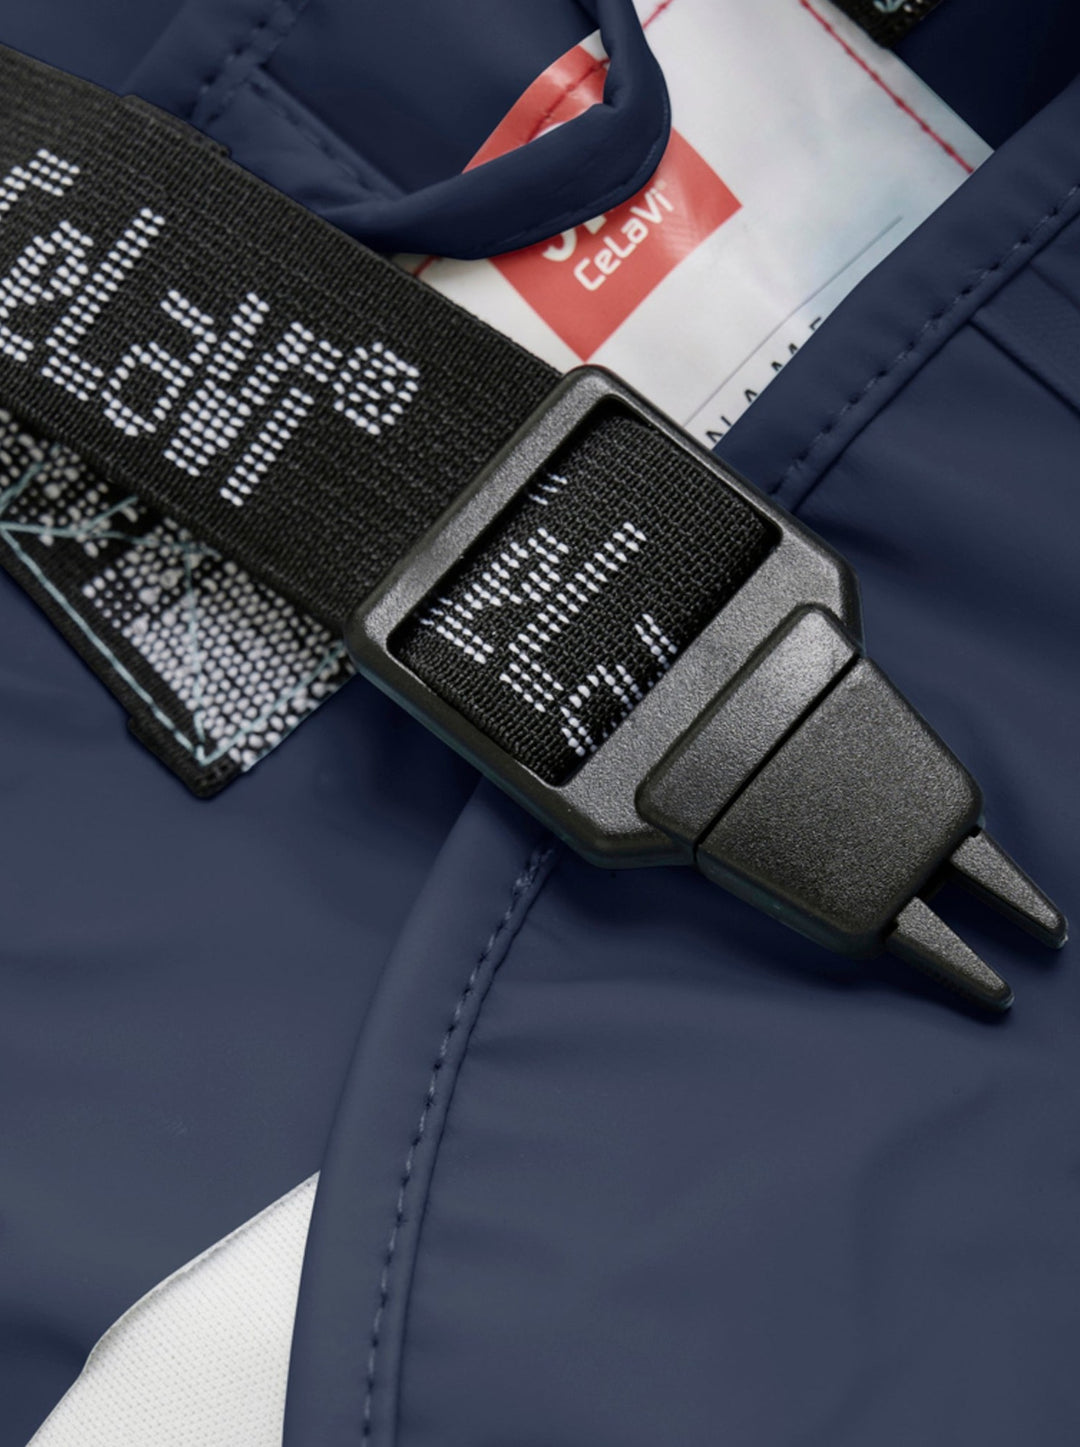 Celavi Spodnie przeciwdeszczowe dla dzieci kurtka przeciwdeszczowa dziecięca Dark Navy 100cm